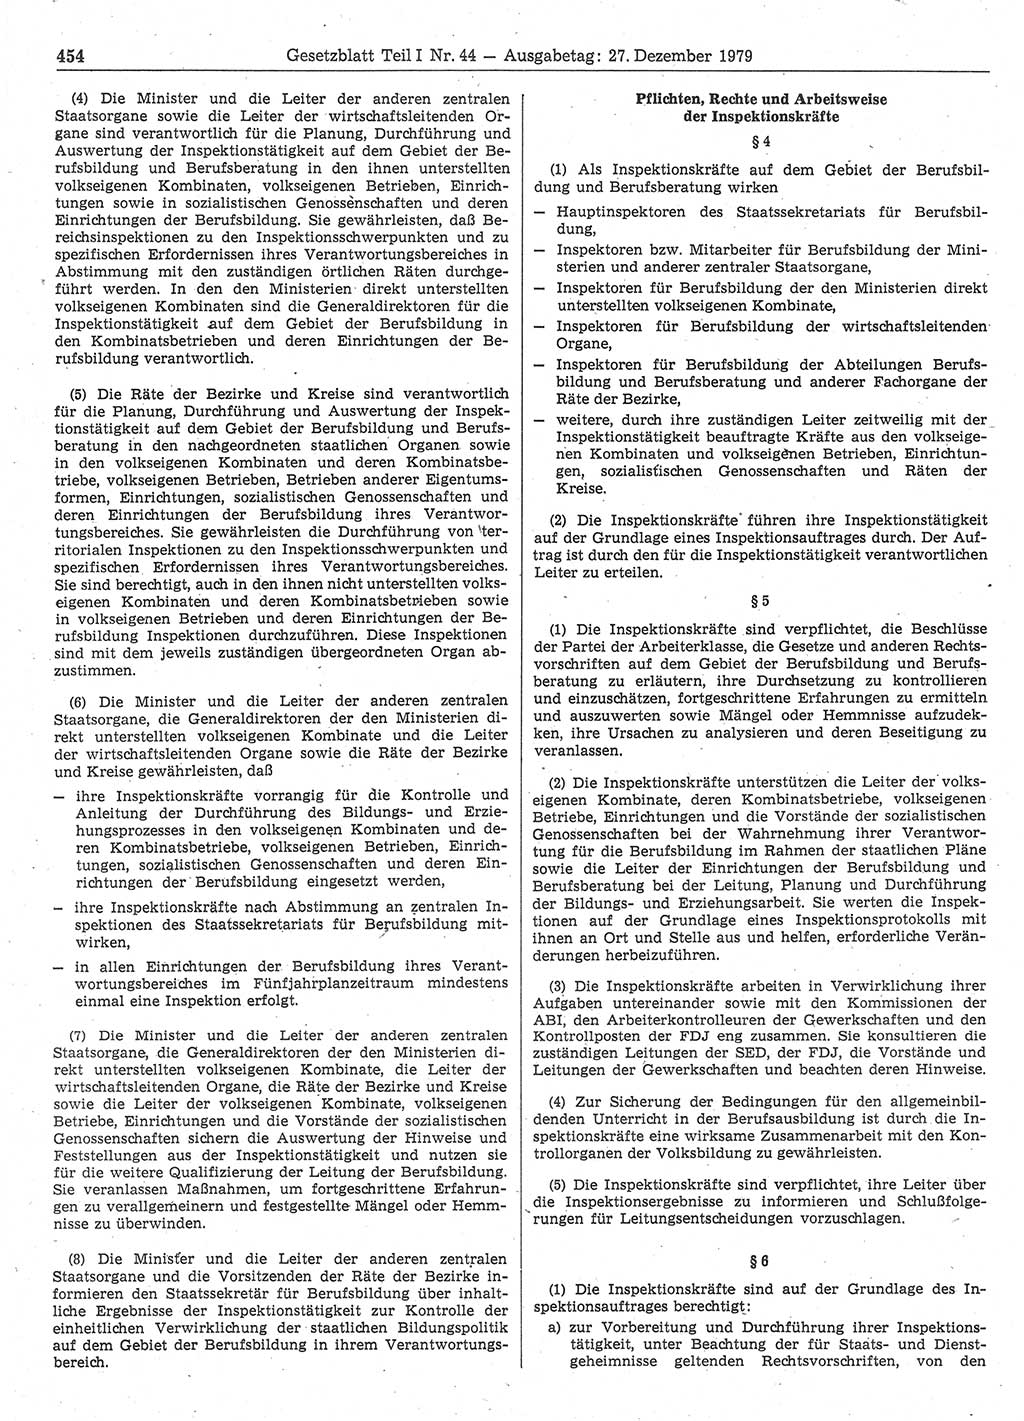 Gesetzblatt (GBl.) der Deutschen Demokratischen Republik (DDR) Teil Ⅰ 1979, Seite 454 (GBl. DDR Ⅰ 1979, S. 454)